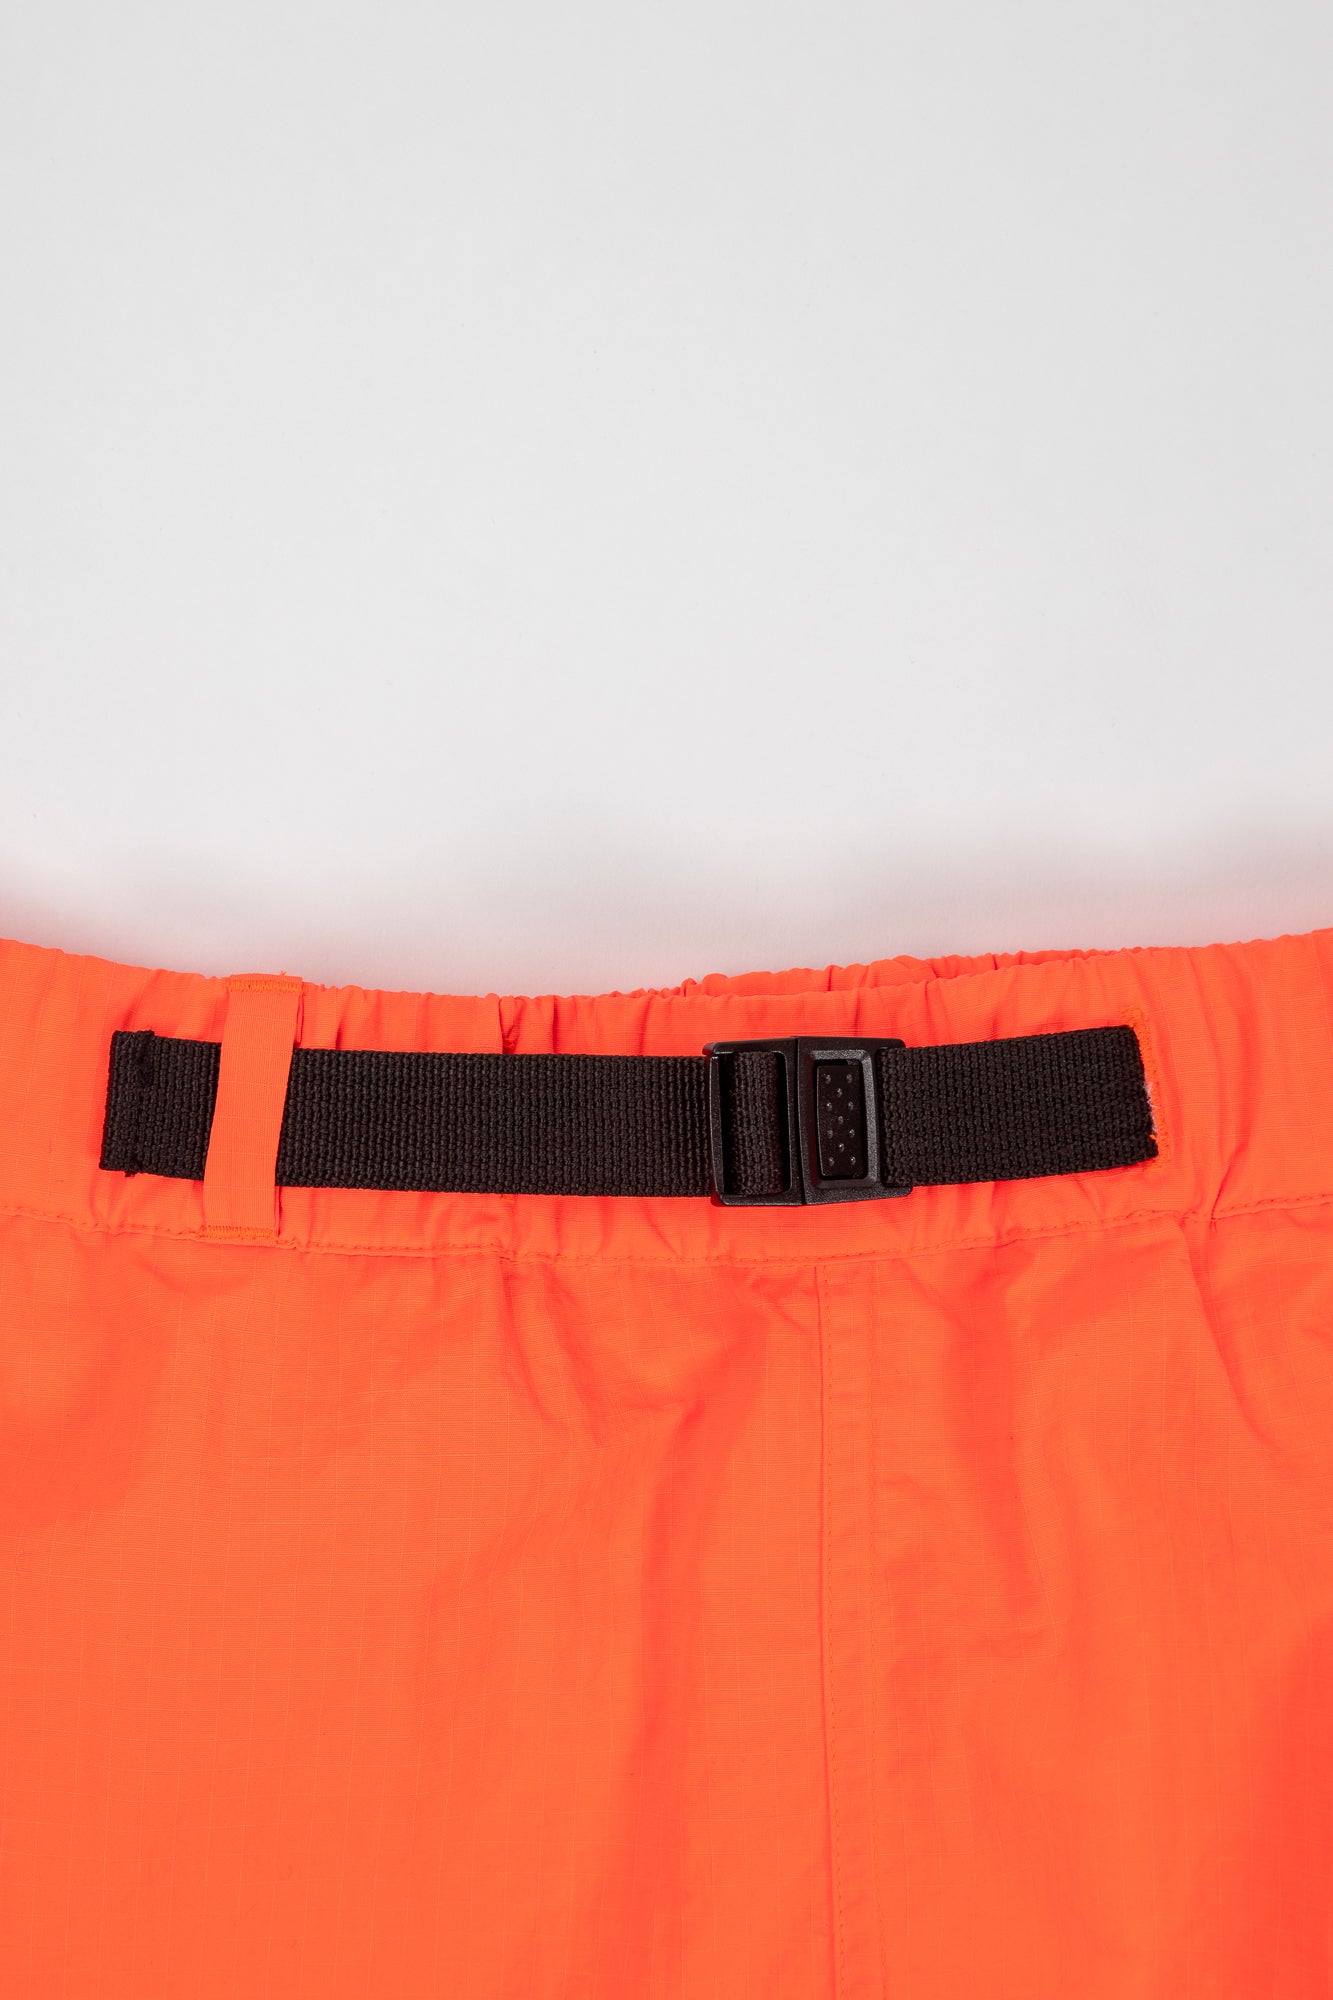 AT Shorts Neon Orange